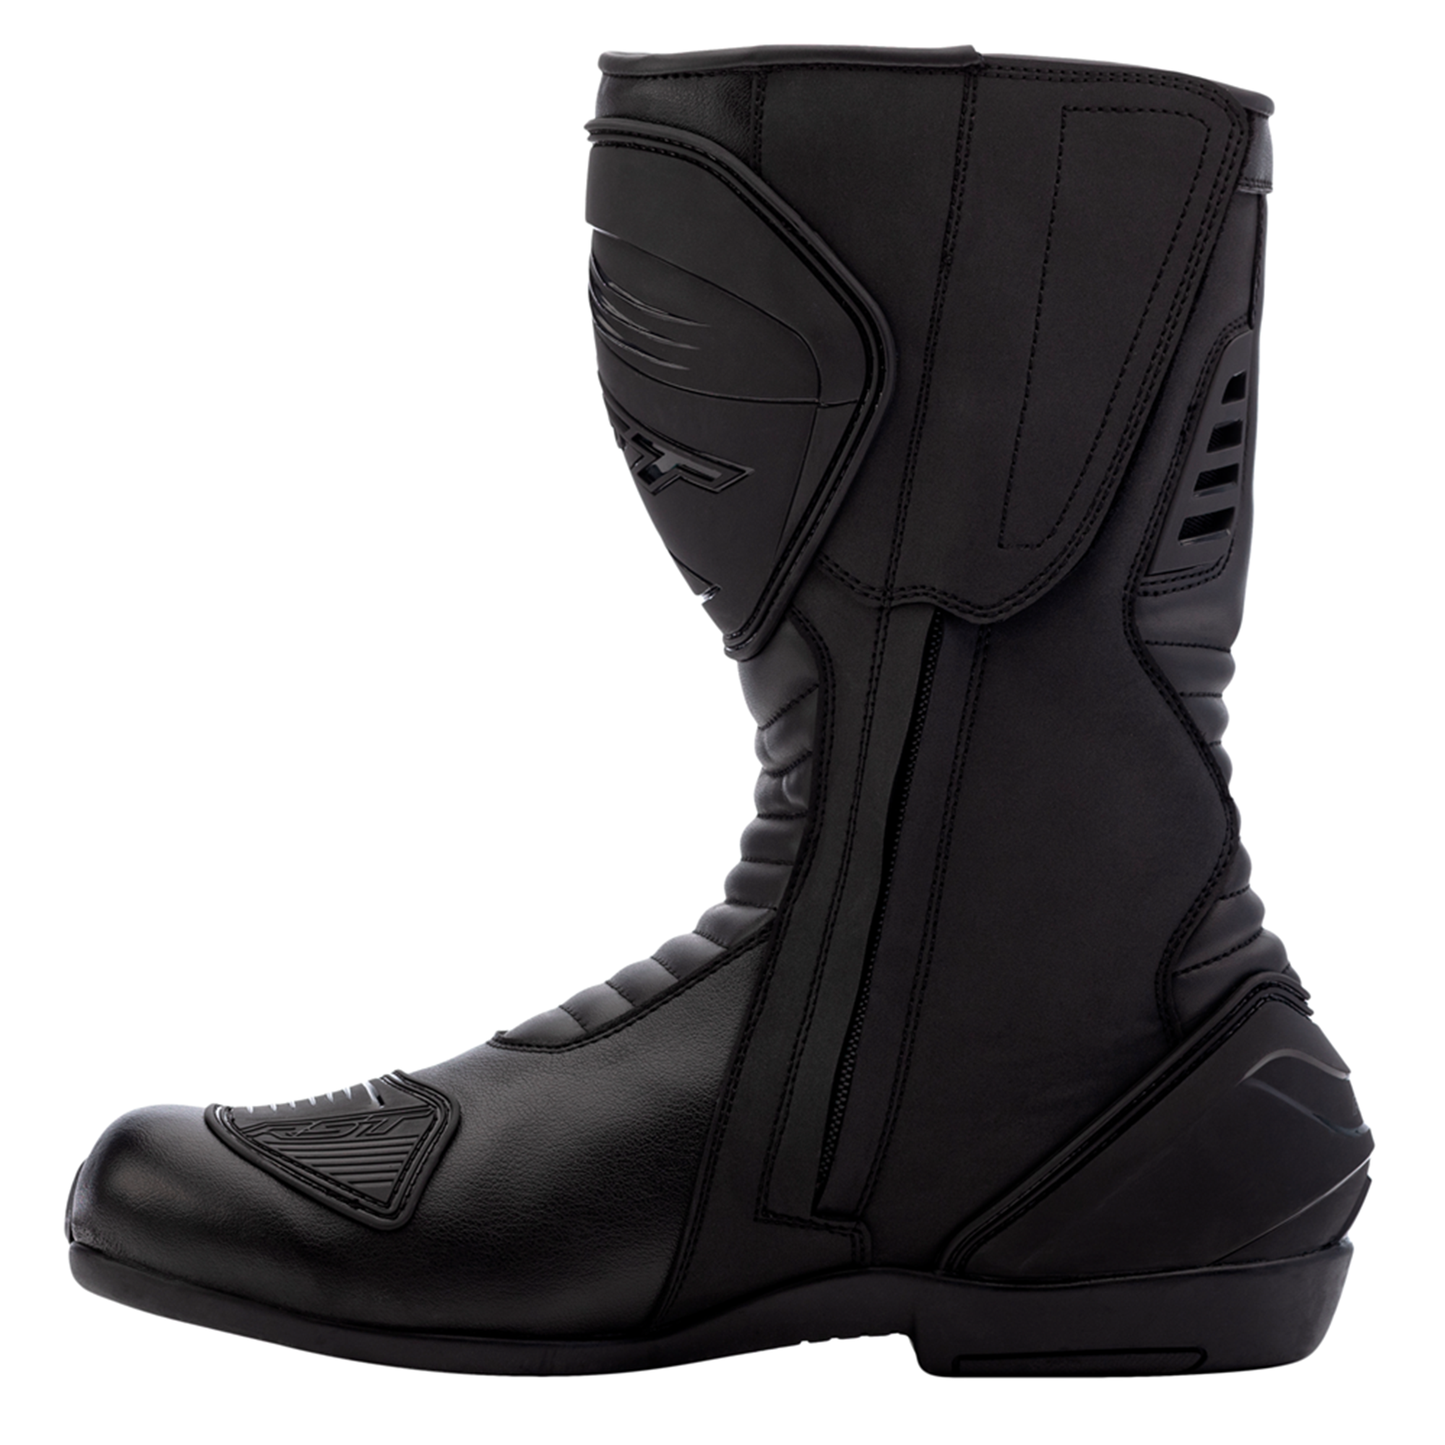 RST S1 Men's Waterproof Boots